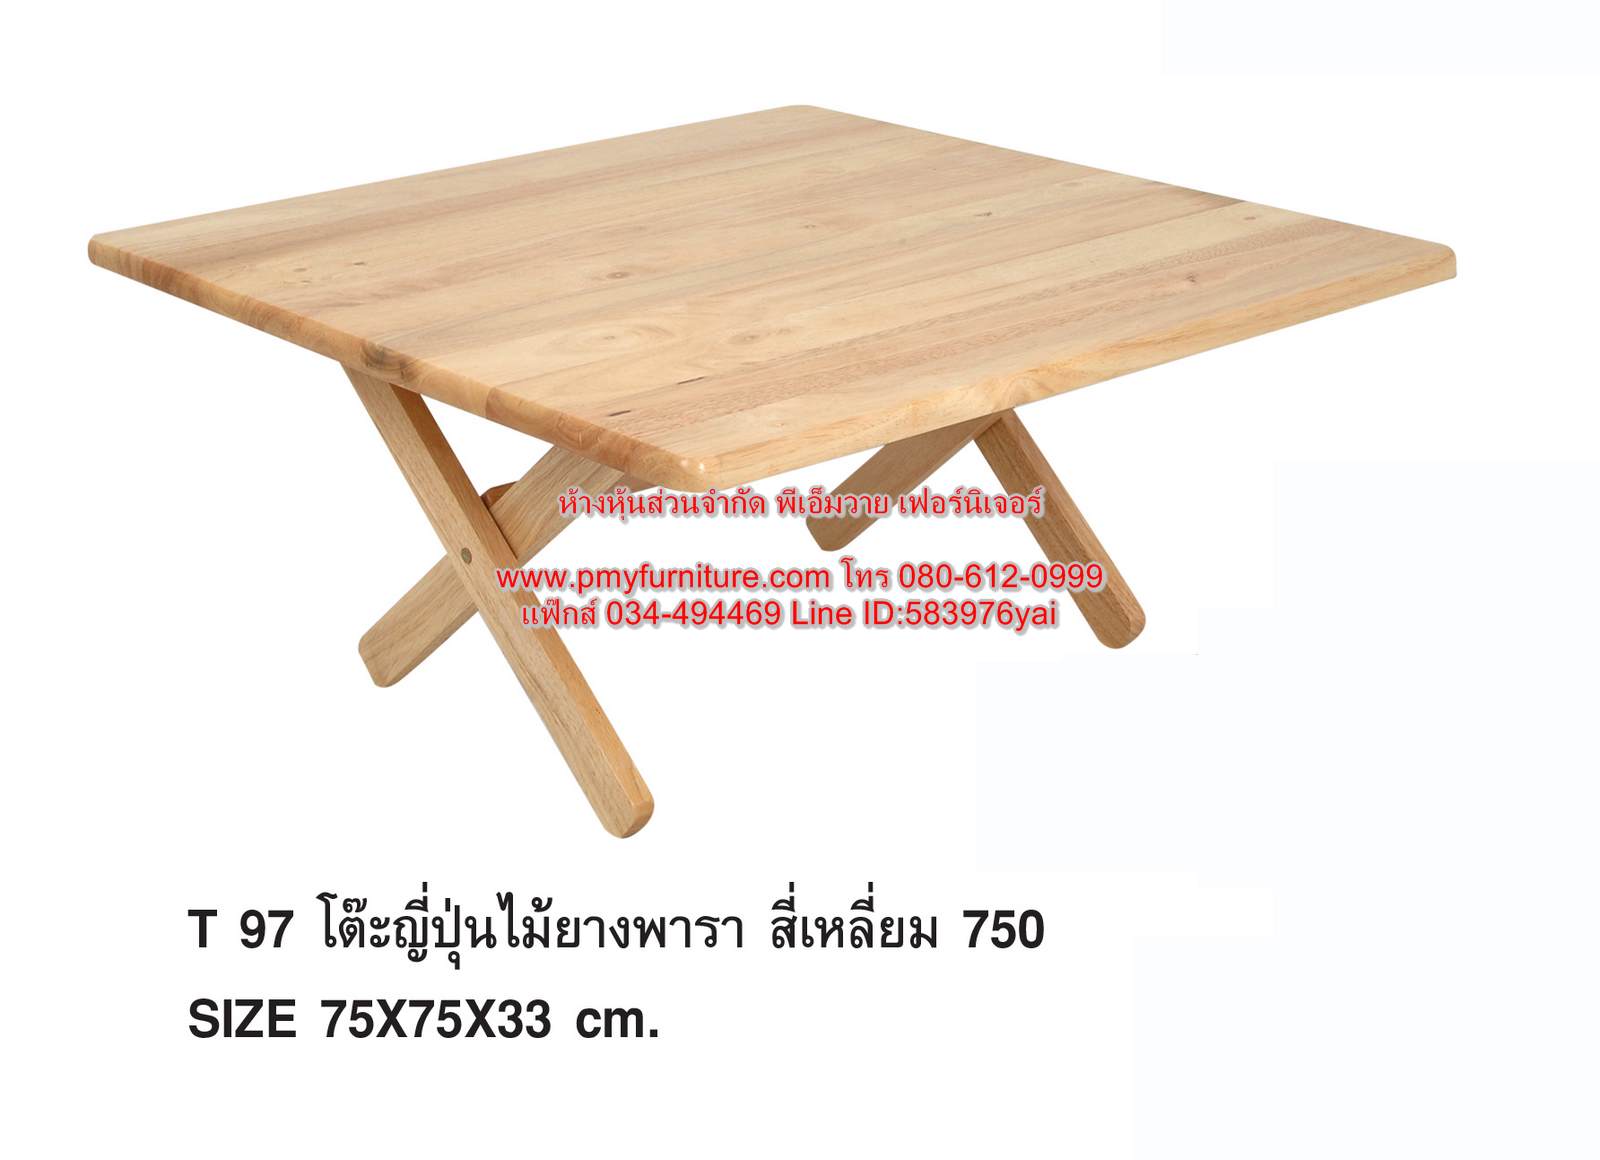 PMY24-3 โต๊ะญี่ปุ่นเหลี่ยม ไม้ยางพารา ขนาด 75x75x33 ซม.